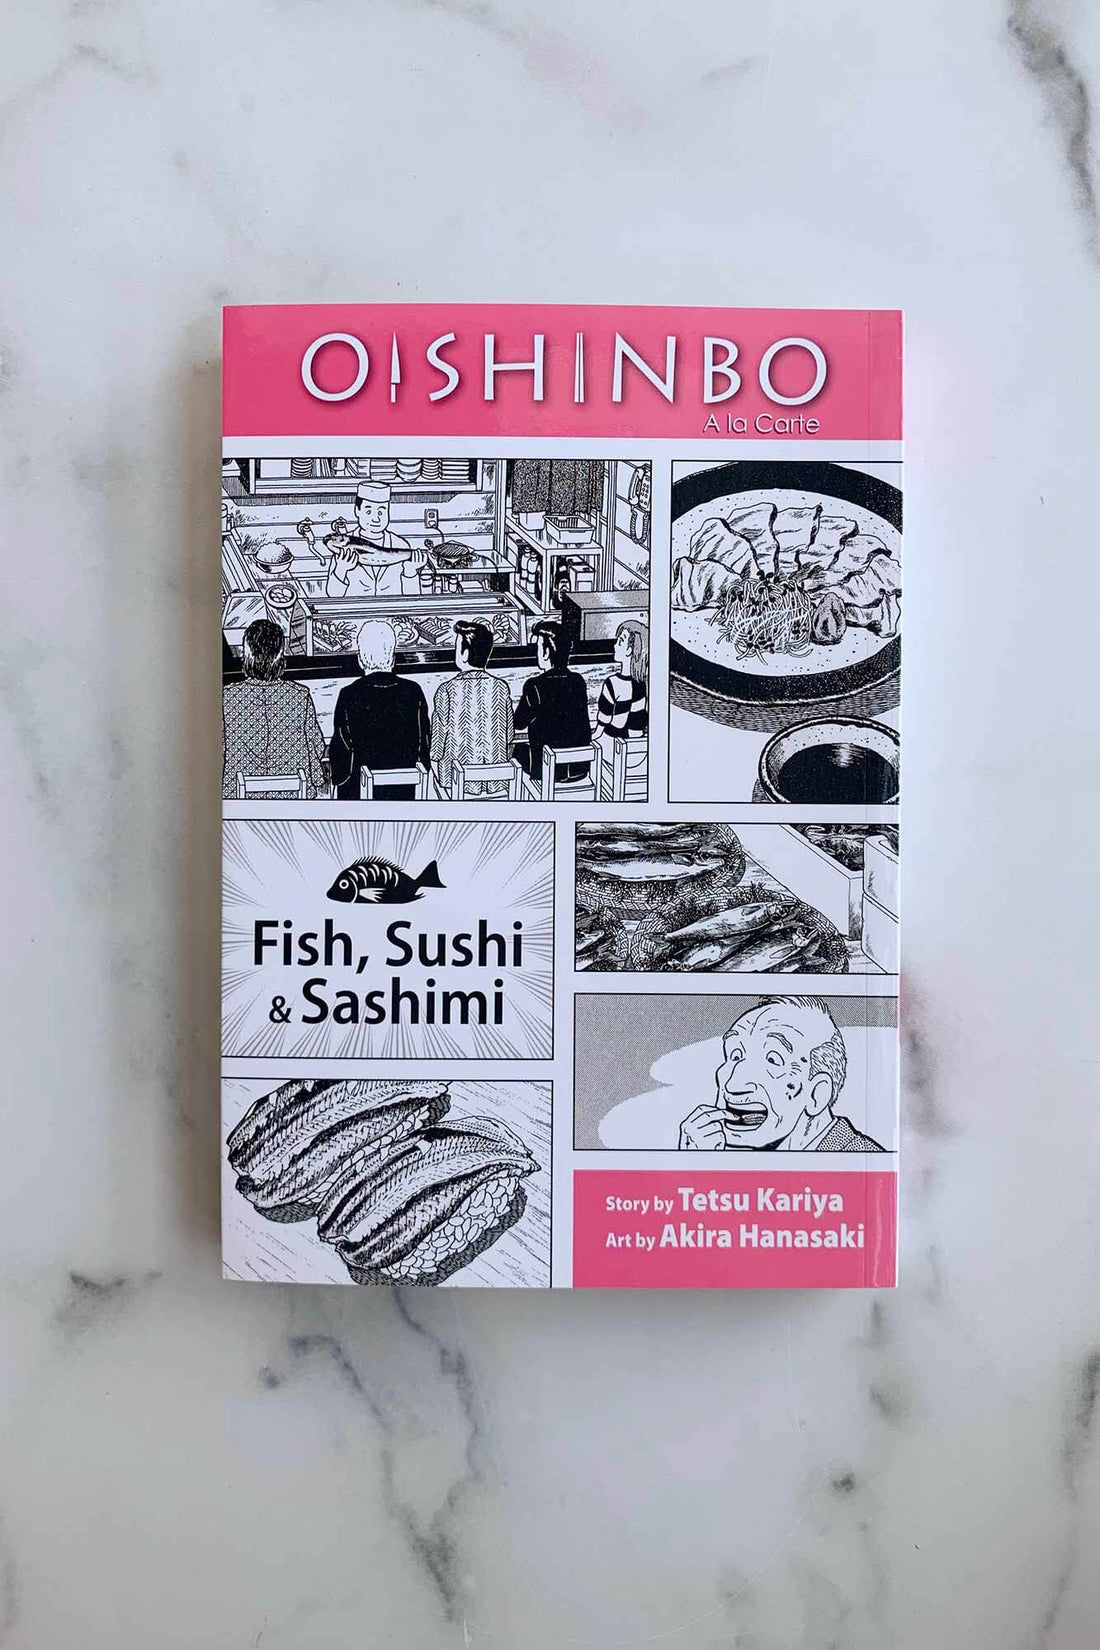 Oishinbo: Fish, Sushi & Sashimi